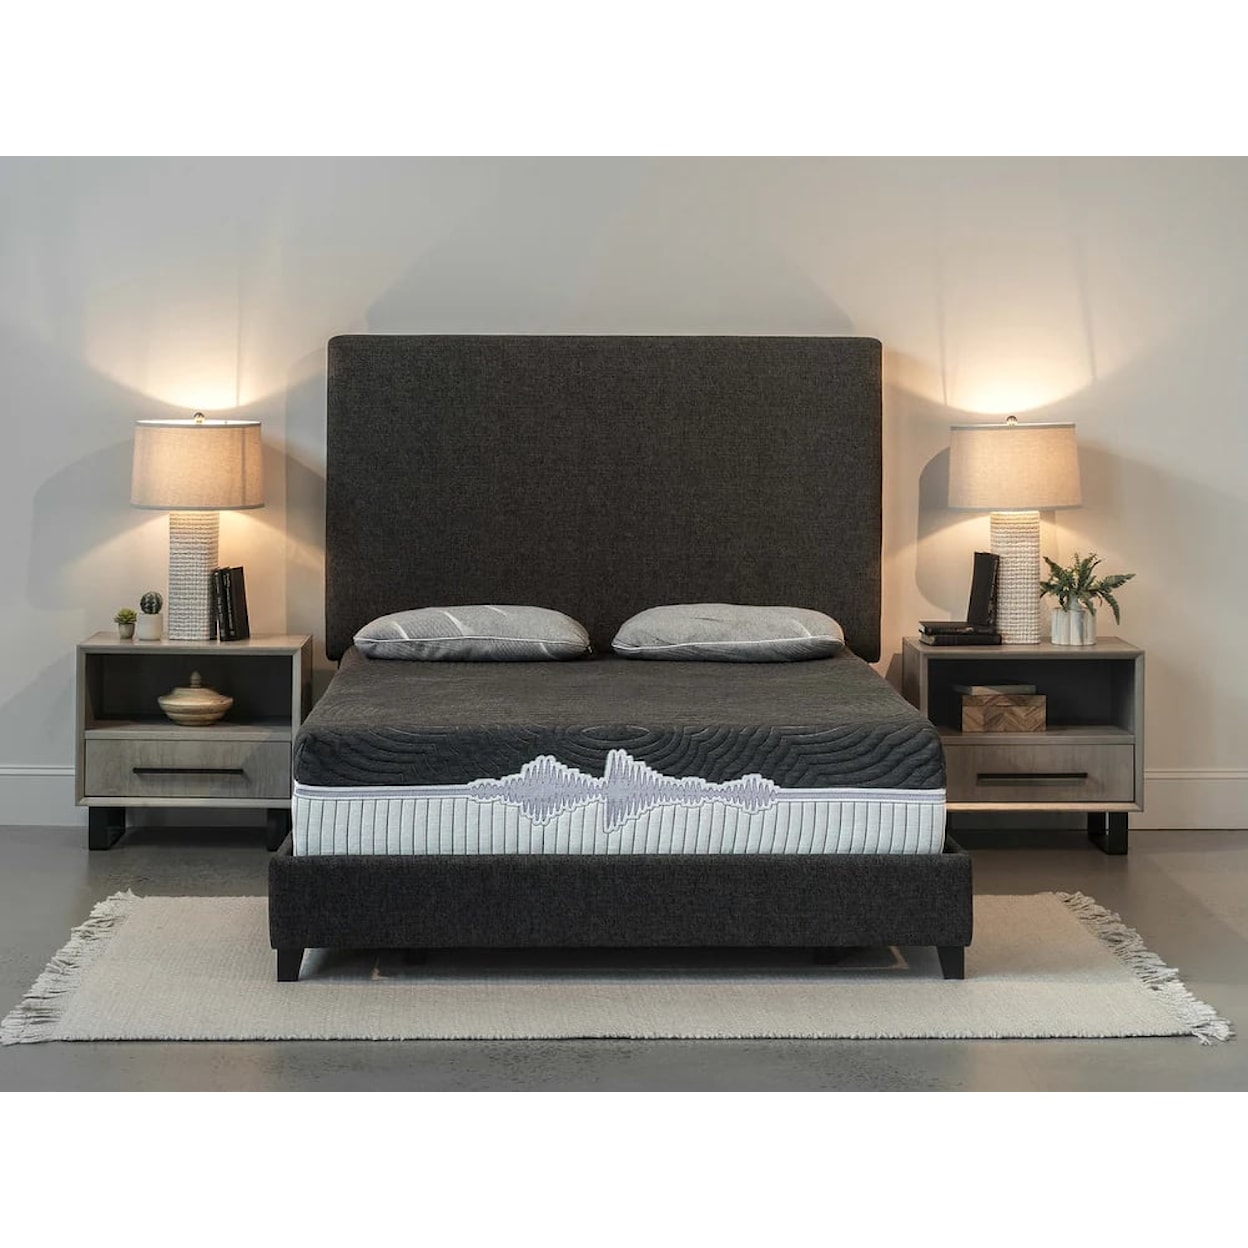 Legends Furniture Good Vibe Sleep Mattress GVS Calm 11.5" Flex-KG HY Mattress